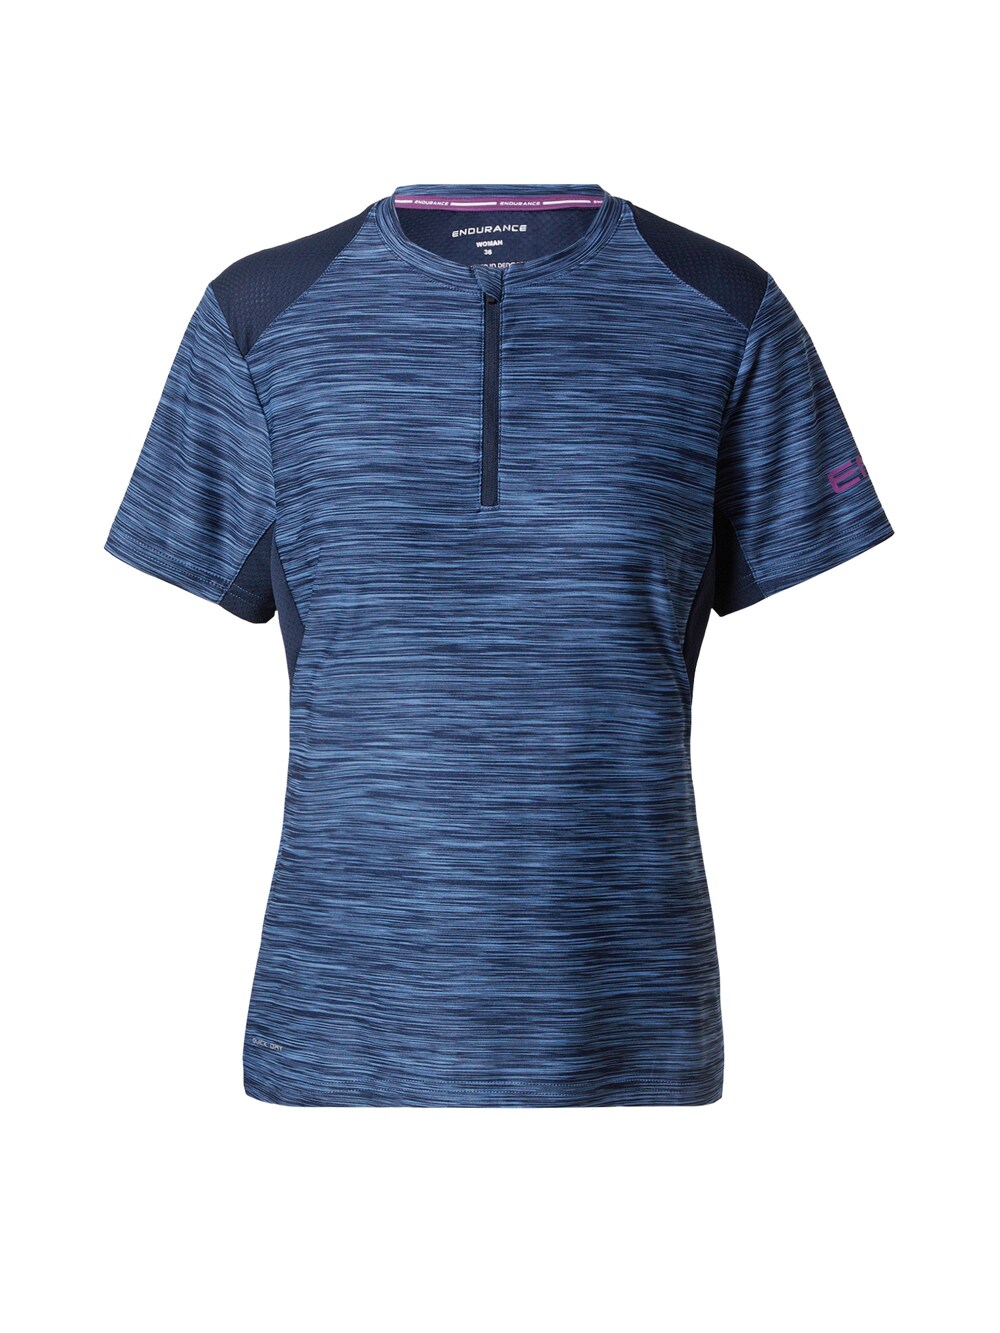 Рубашка для выступлений Endurance Marimba, синий/темно-синий рубашка для выступлений endurance keskon синий